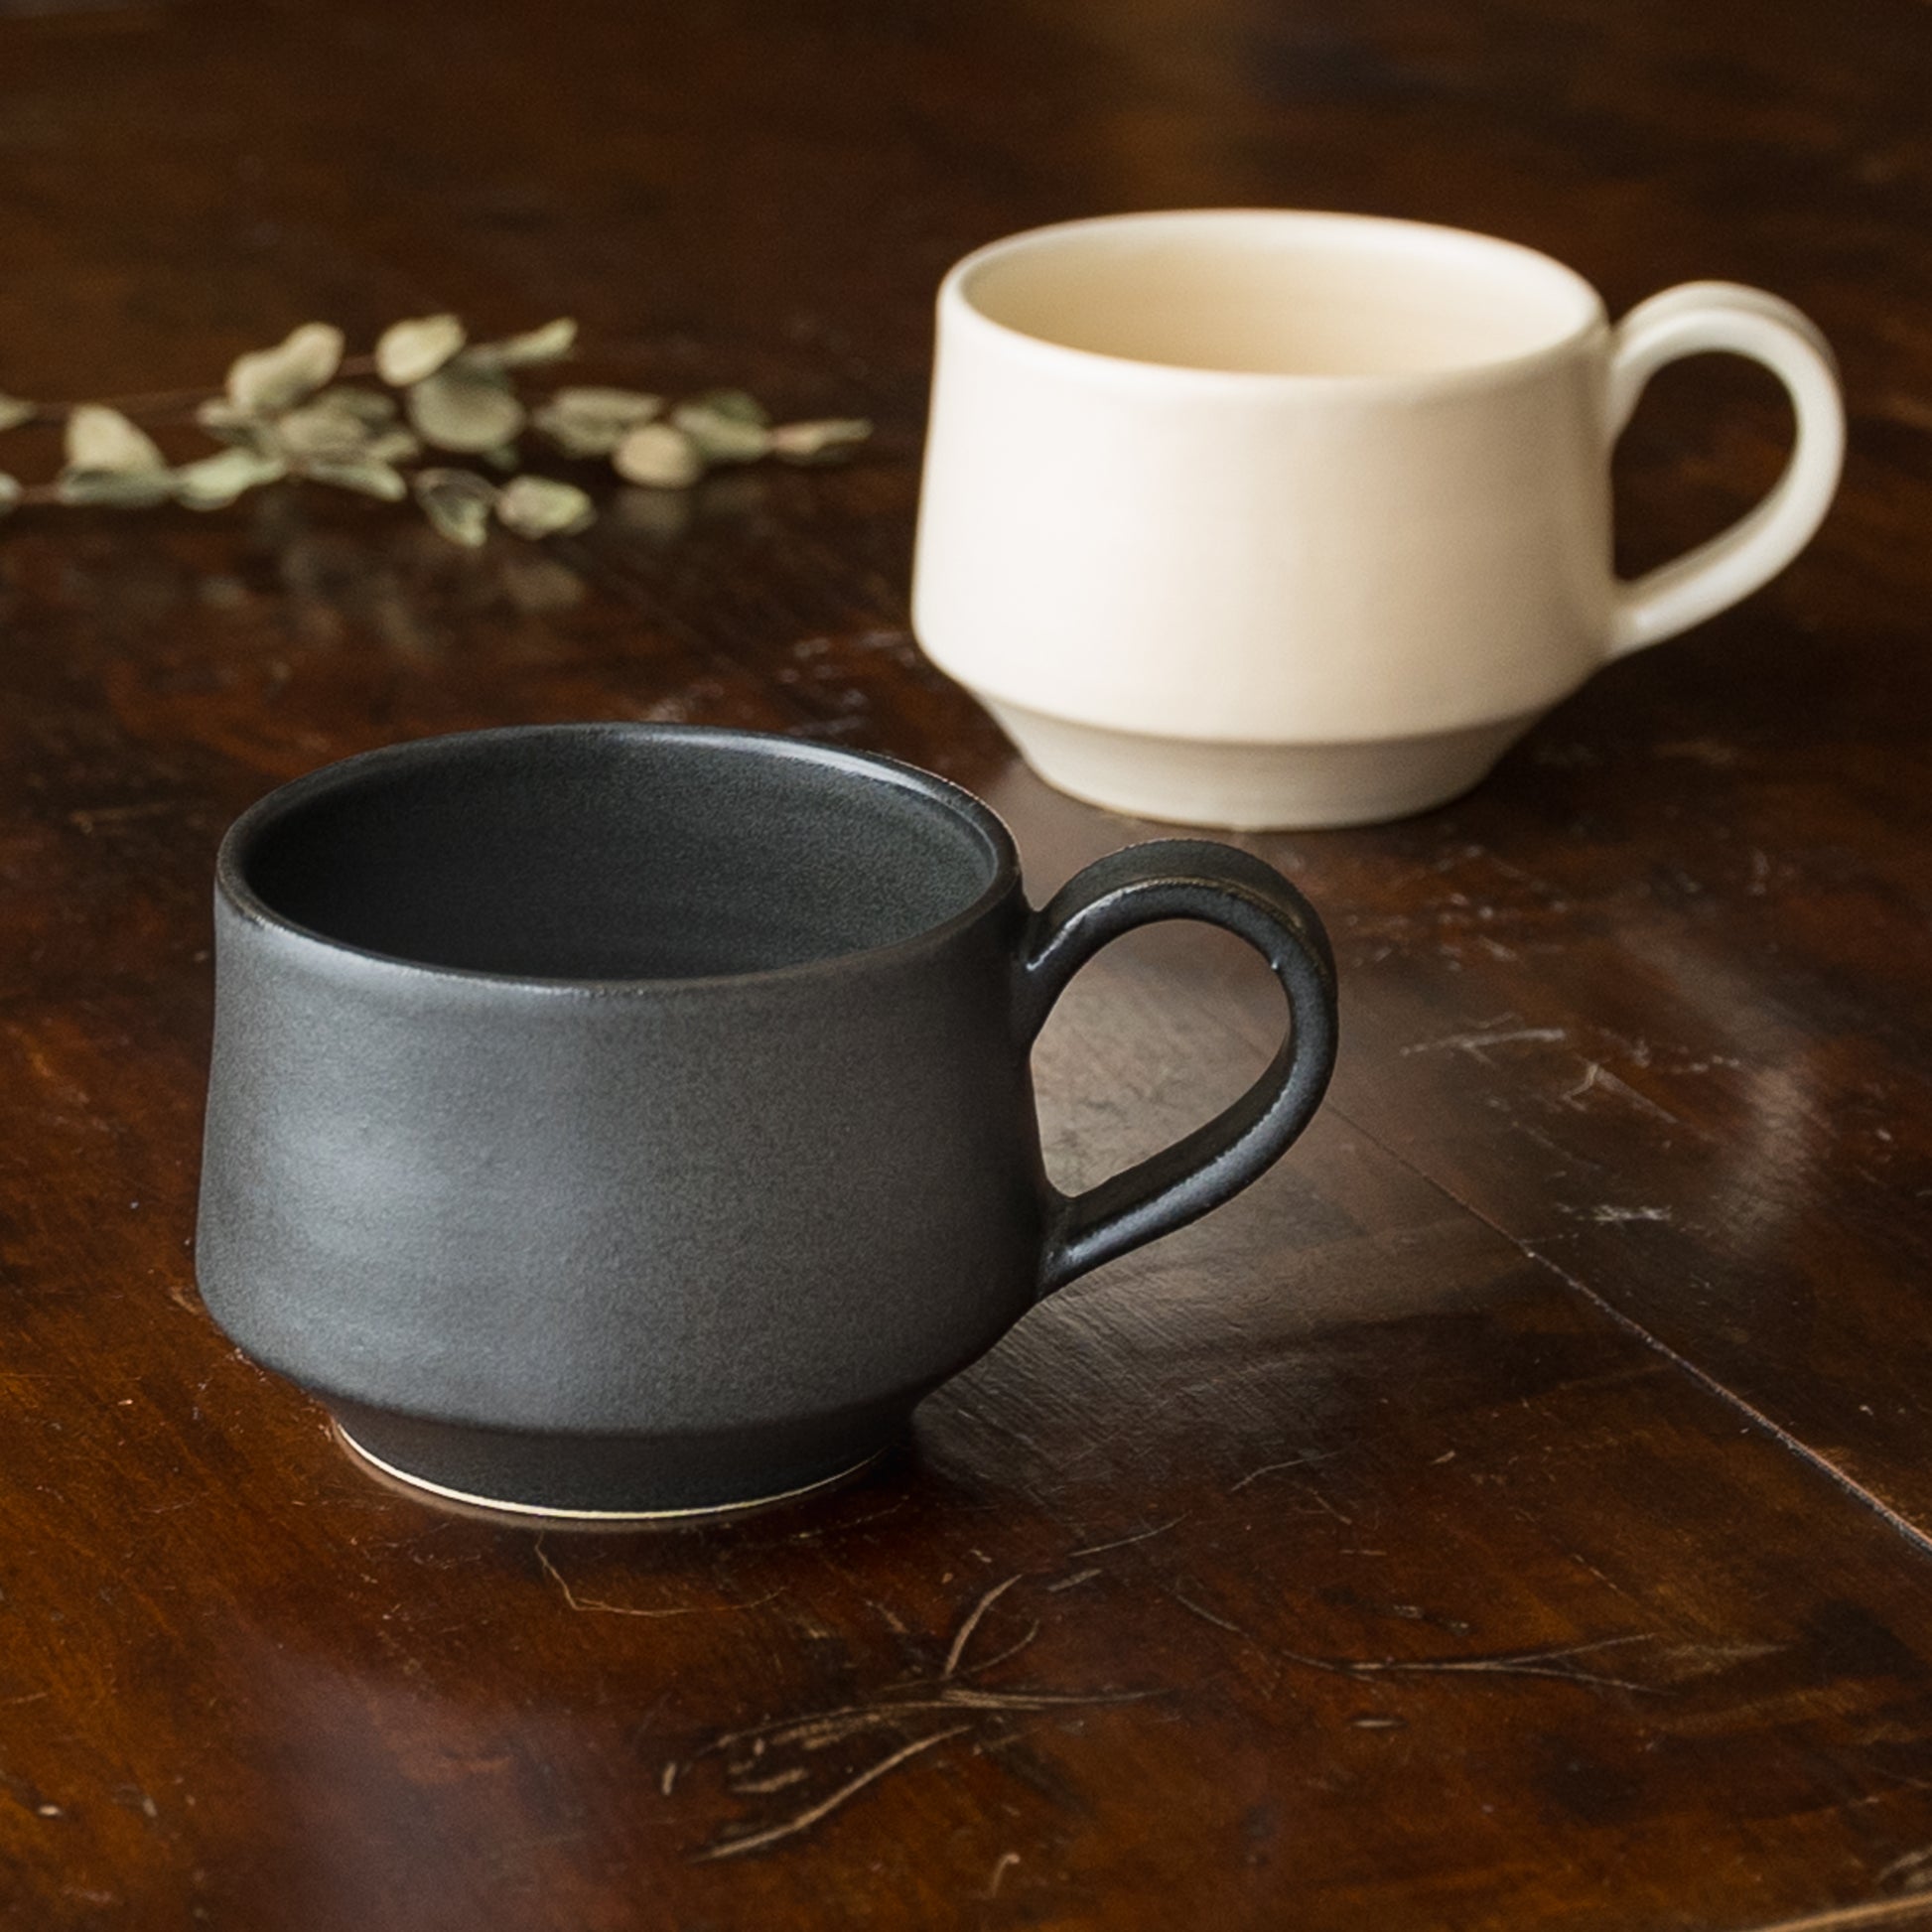 午後のティータイムを上品に過ごせるyoshida potteryのコーヒーカップ